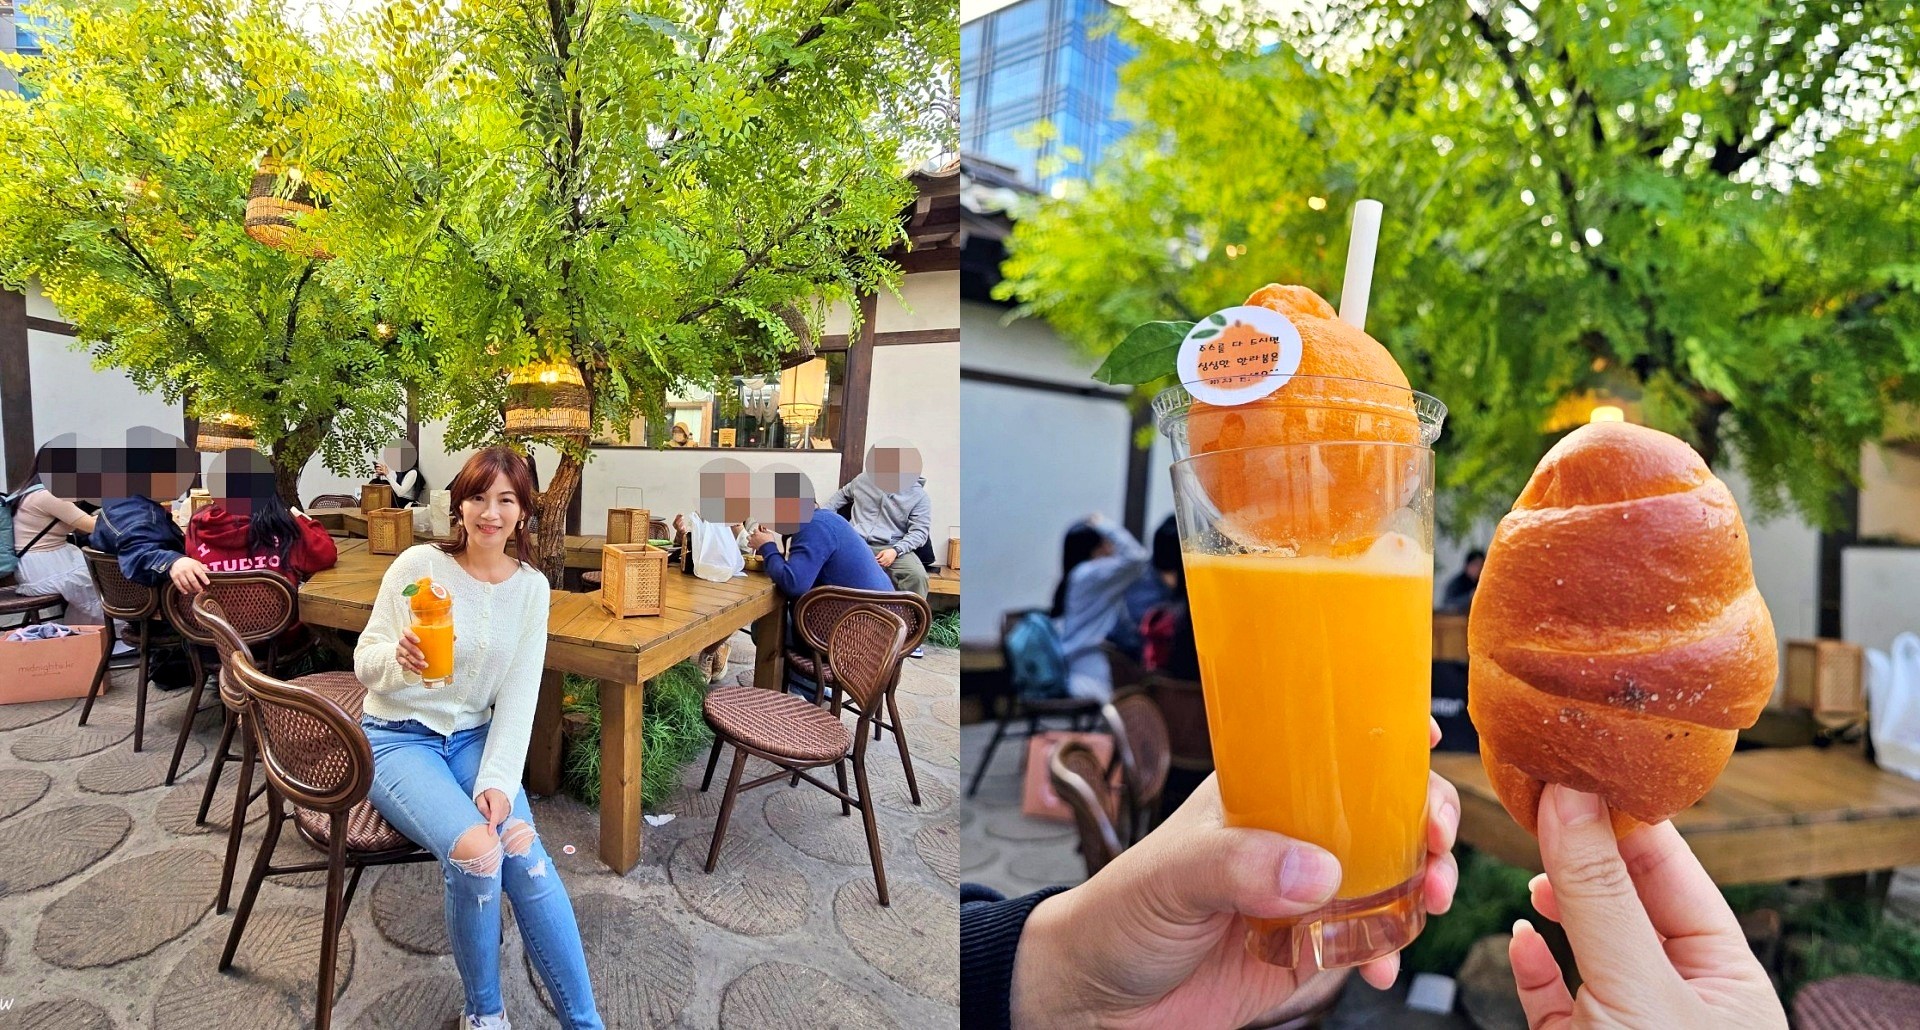 首爾益善洞美食，天然鹽麵包搭配一整顆橘子的果汁，超有濟洲島風味的下午茶 - yukiblog.tw